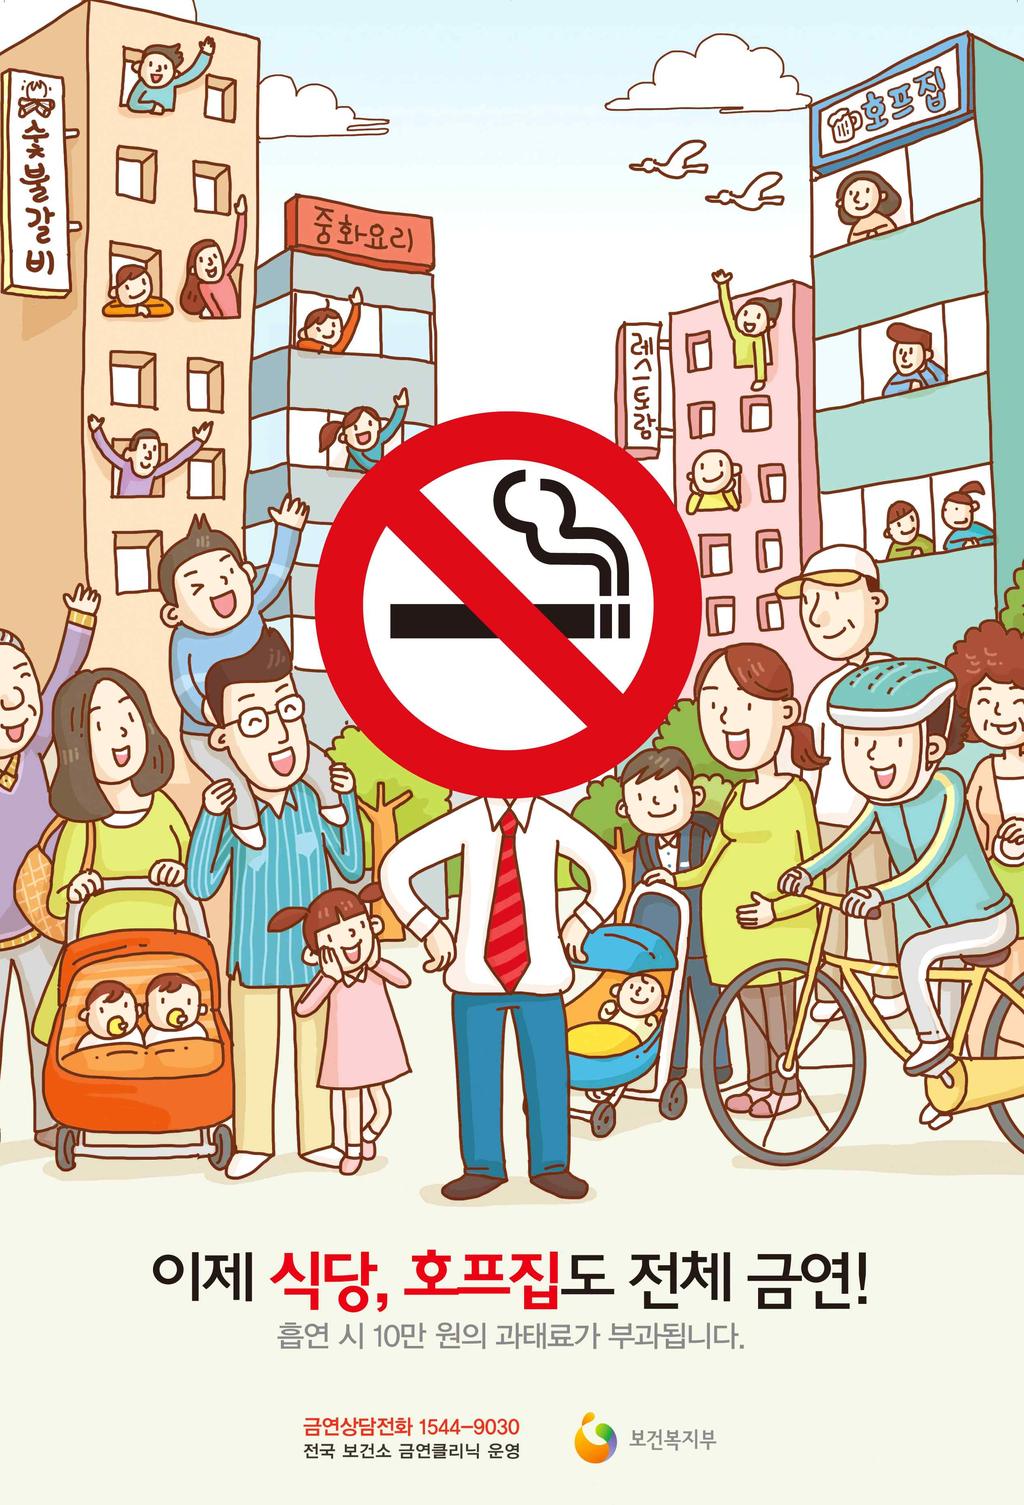 길거리 금연 권장 캠페인 : 금연, 건강으로 가는